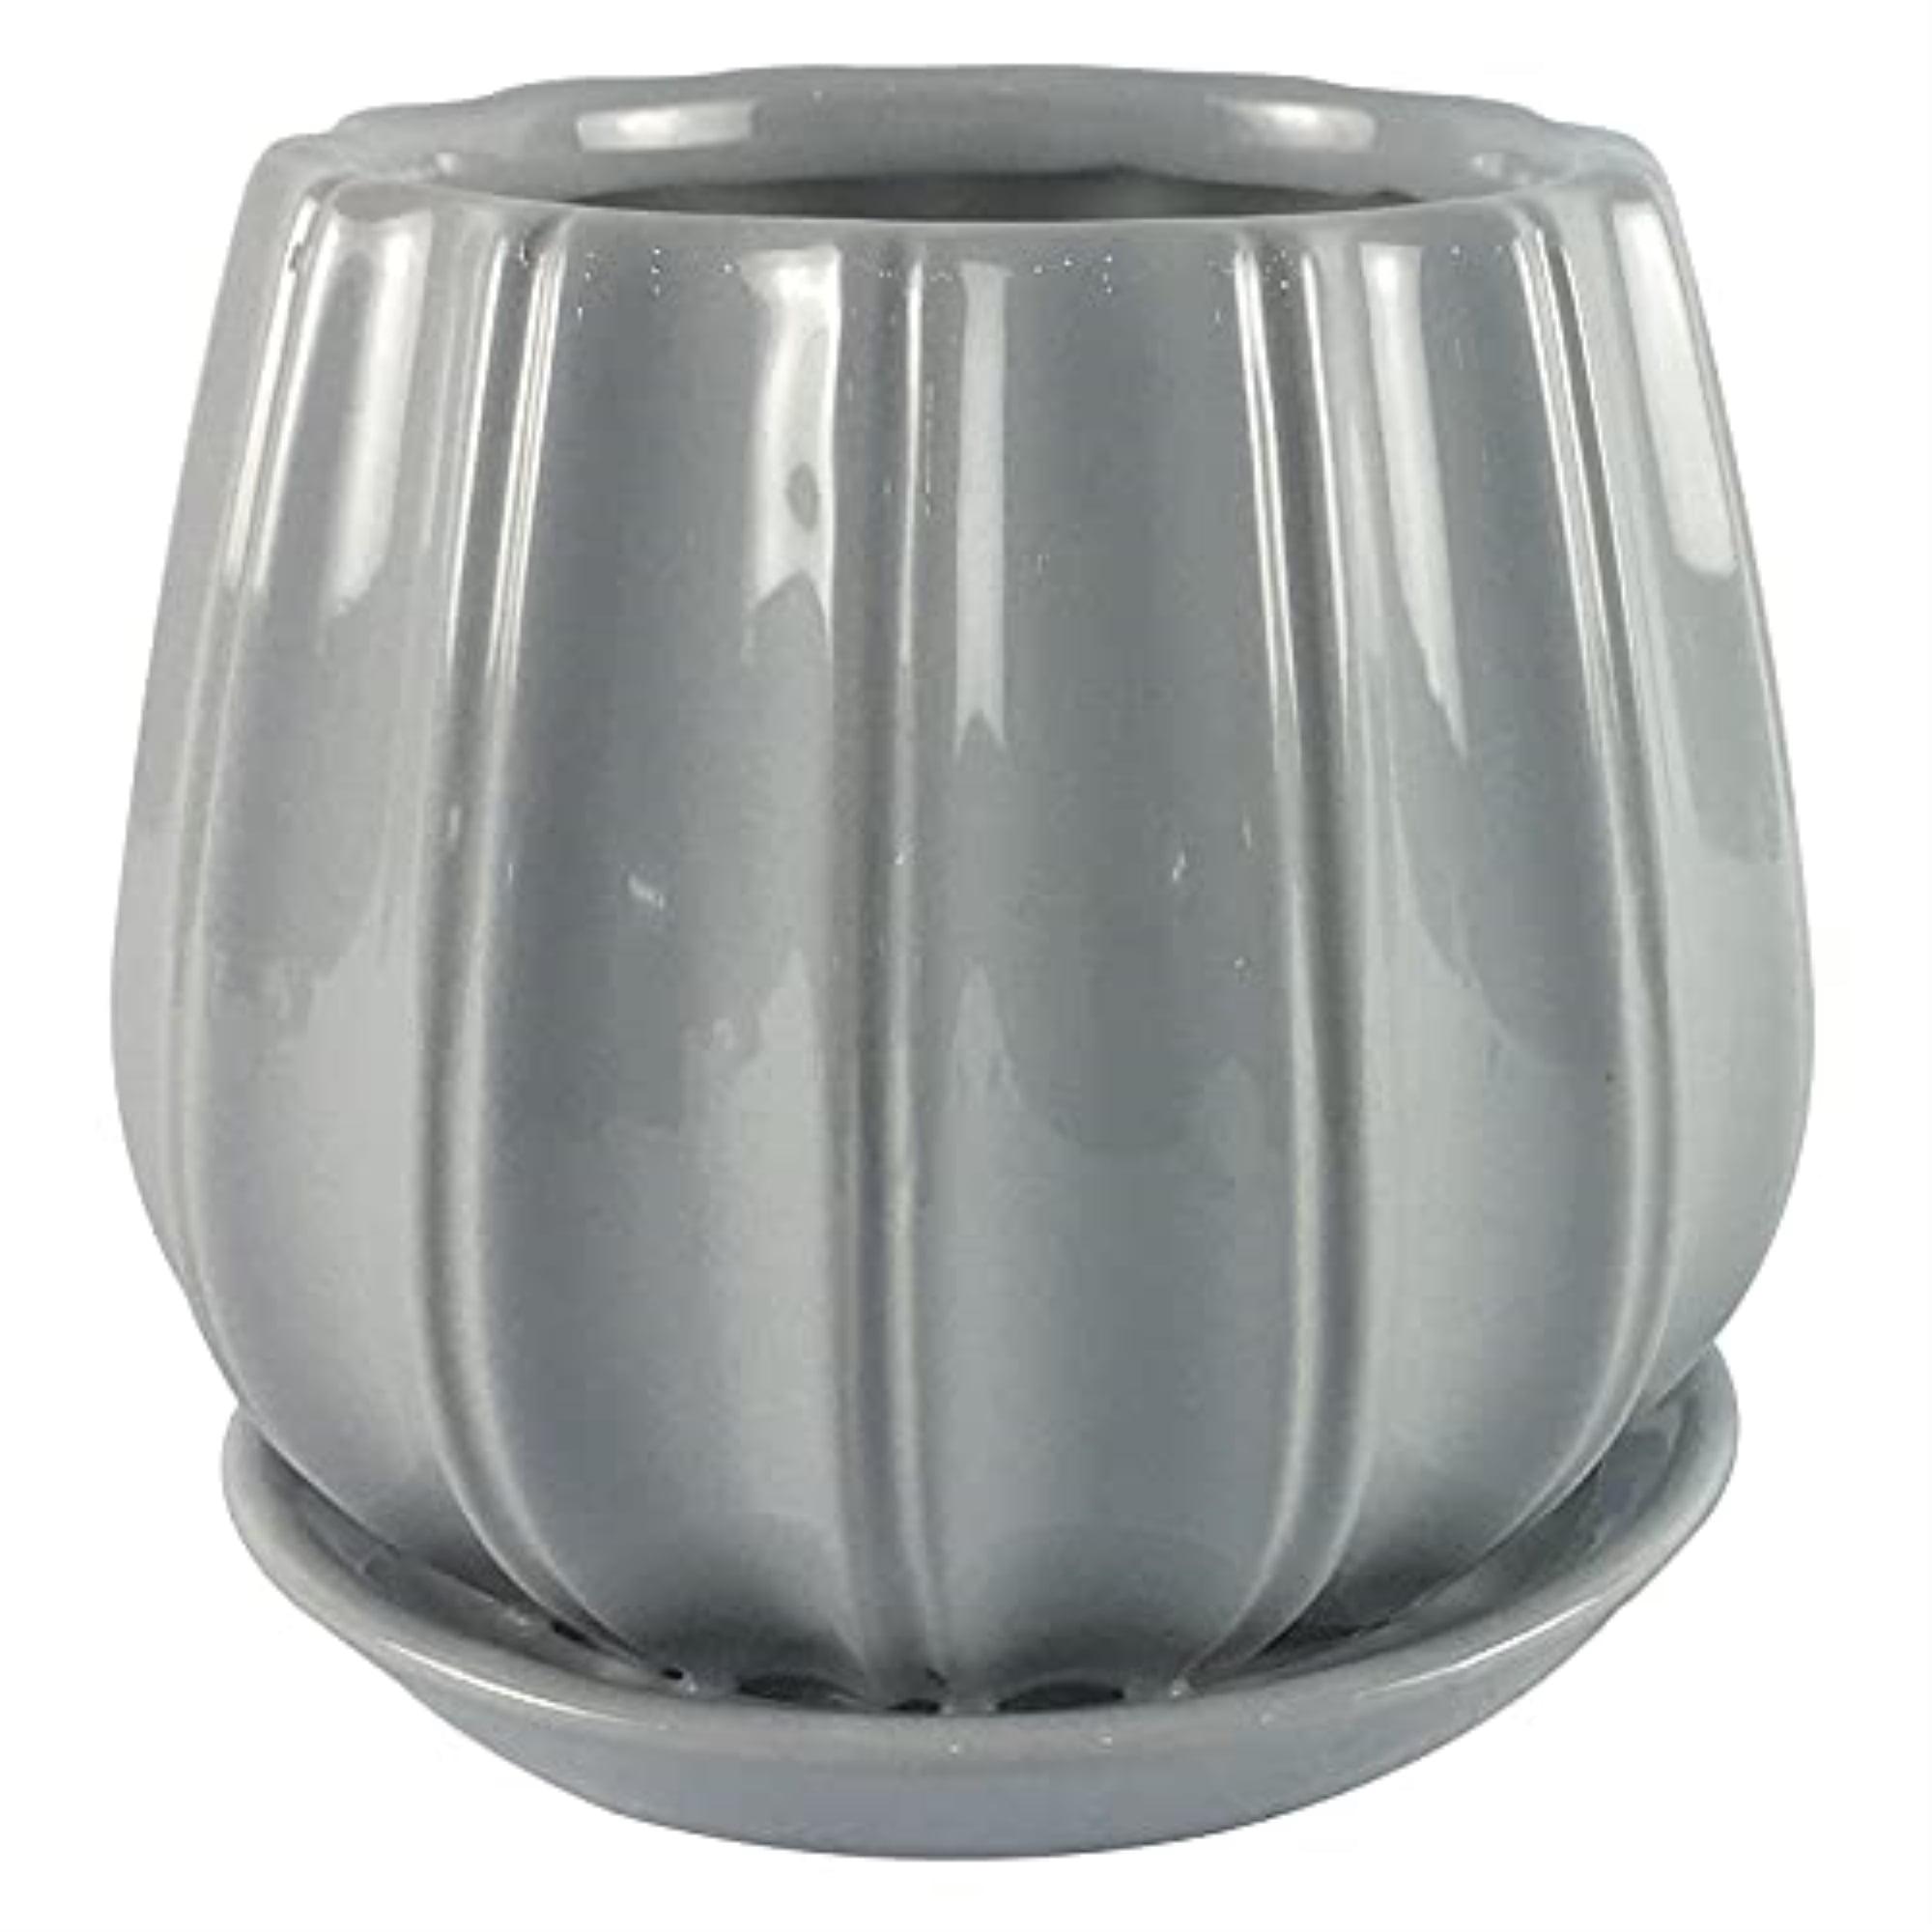 Contour Artisanal Glaze 6" Round Ceramic Planter with Saucer - Gray